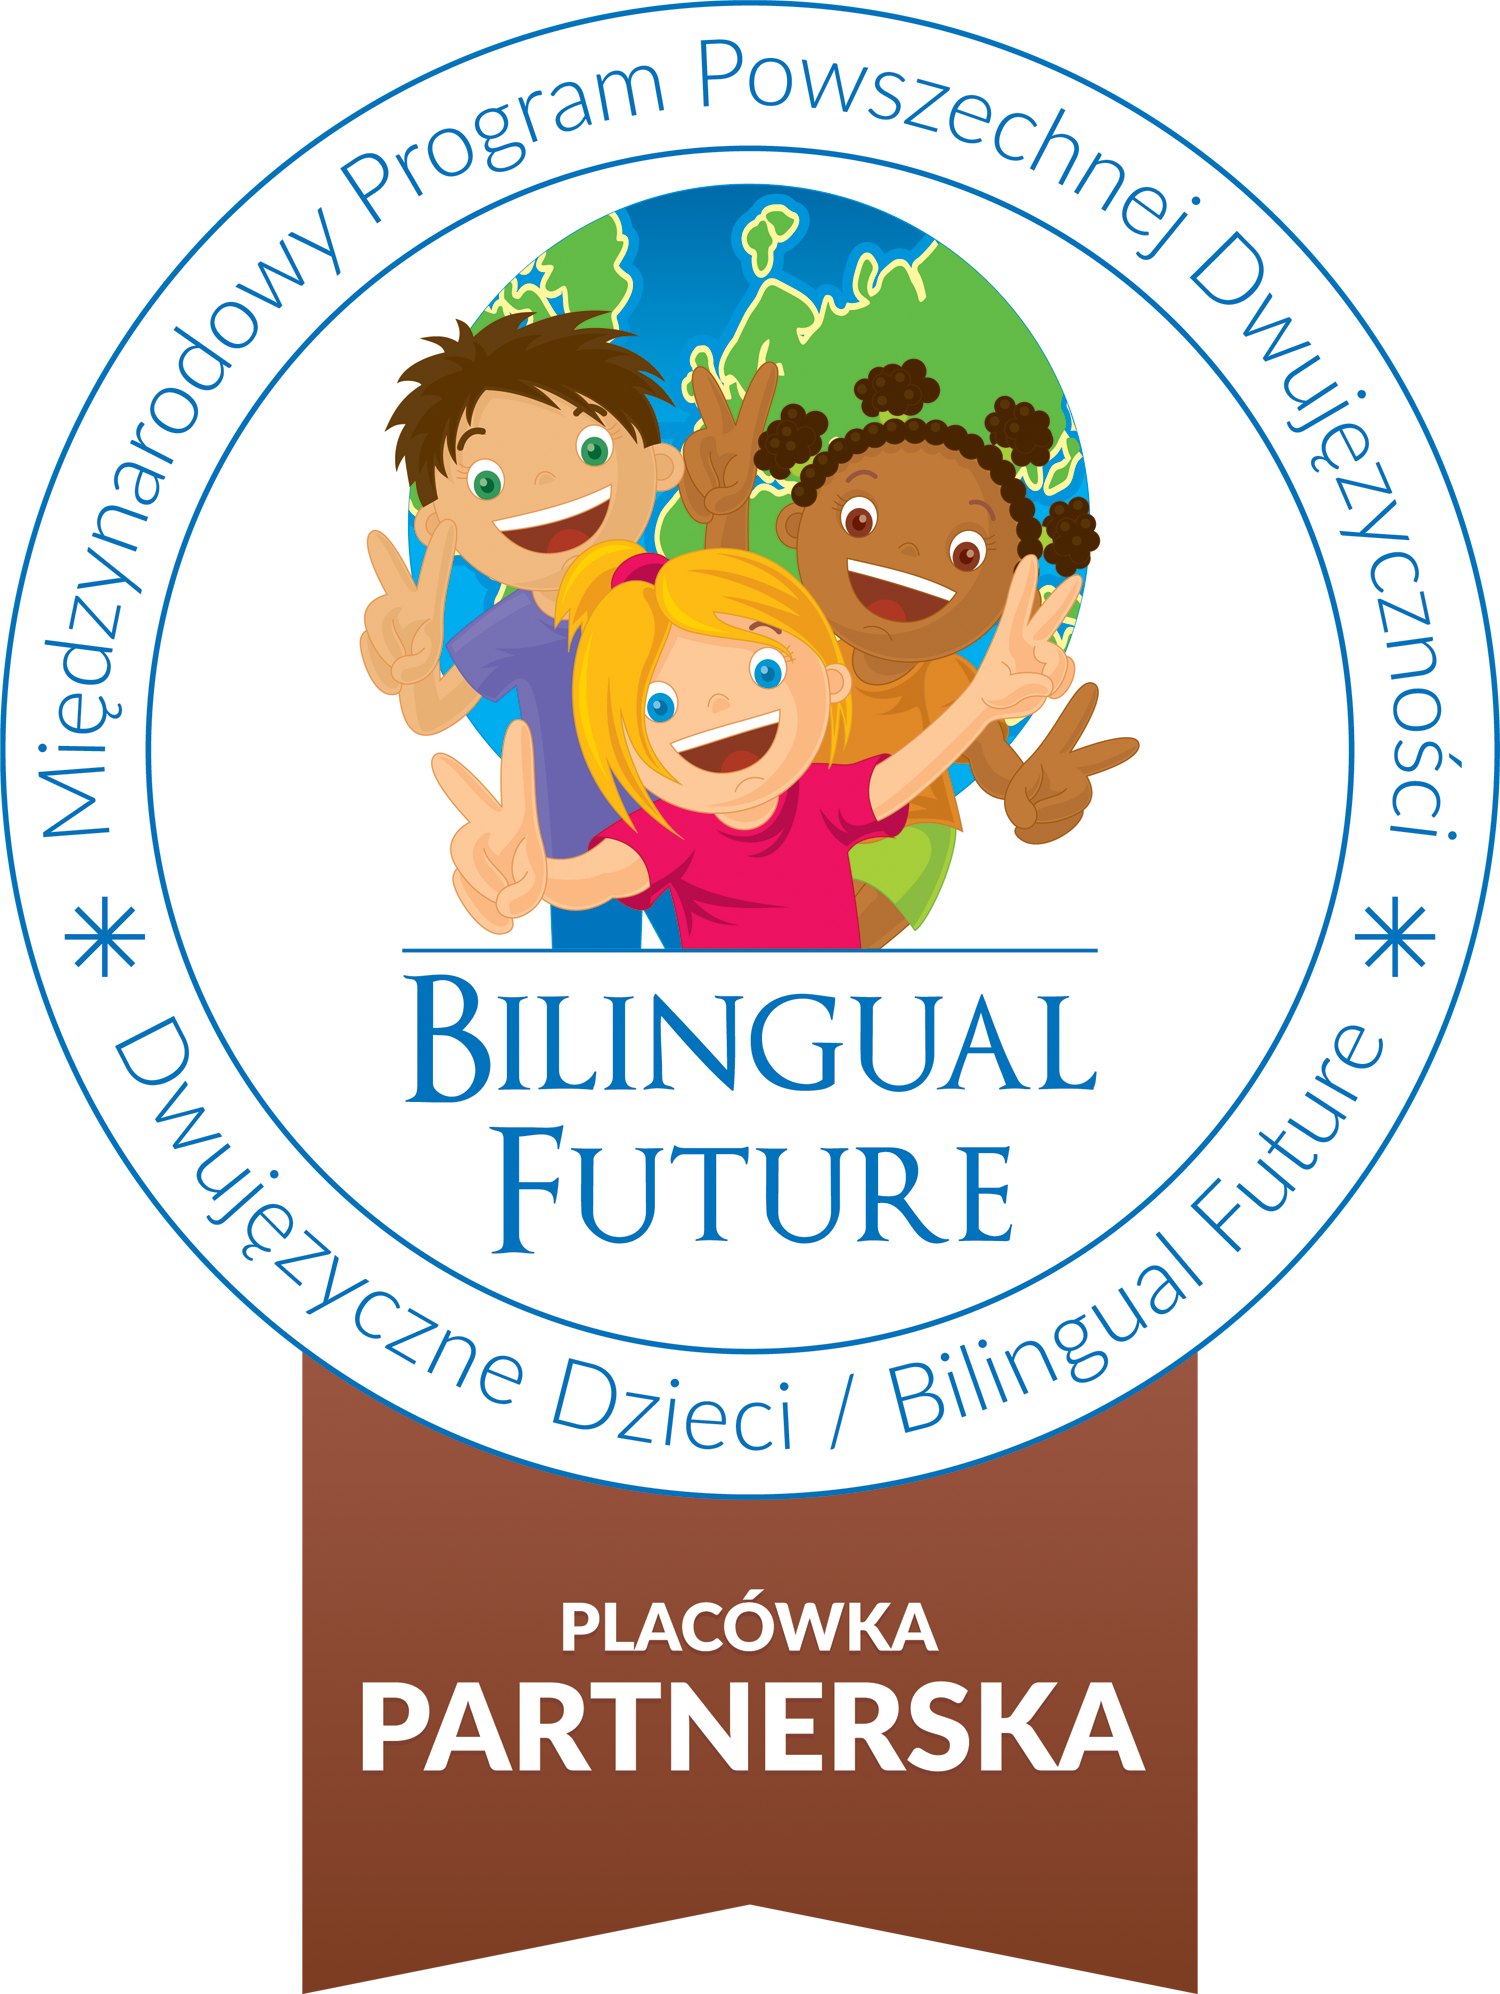 logo programu Dzwujęzyczne Dzieci